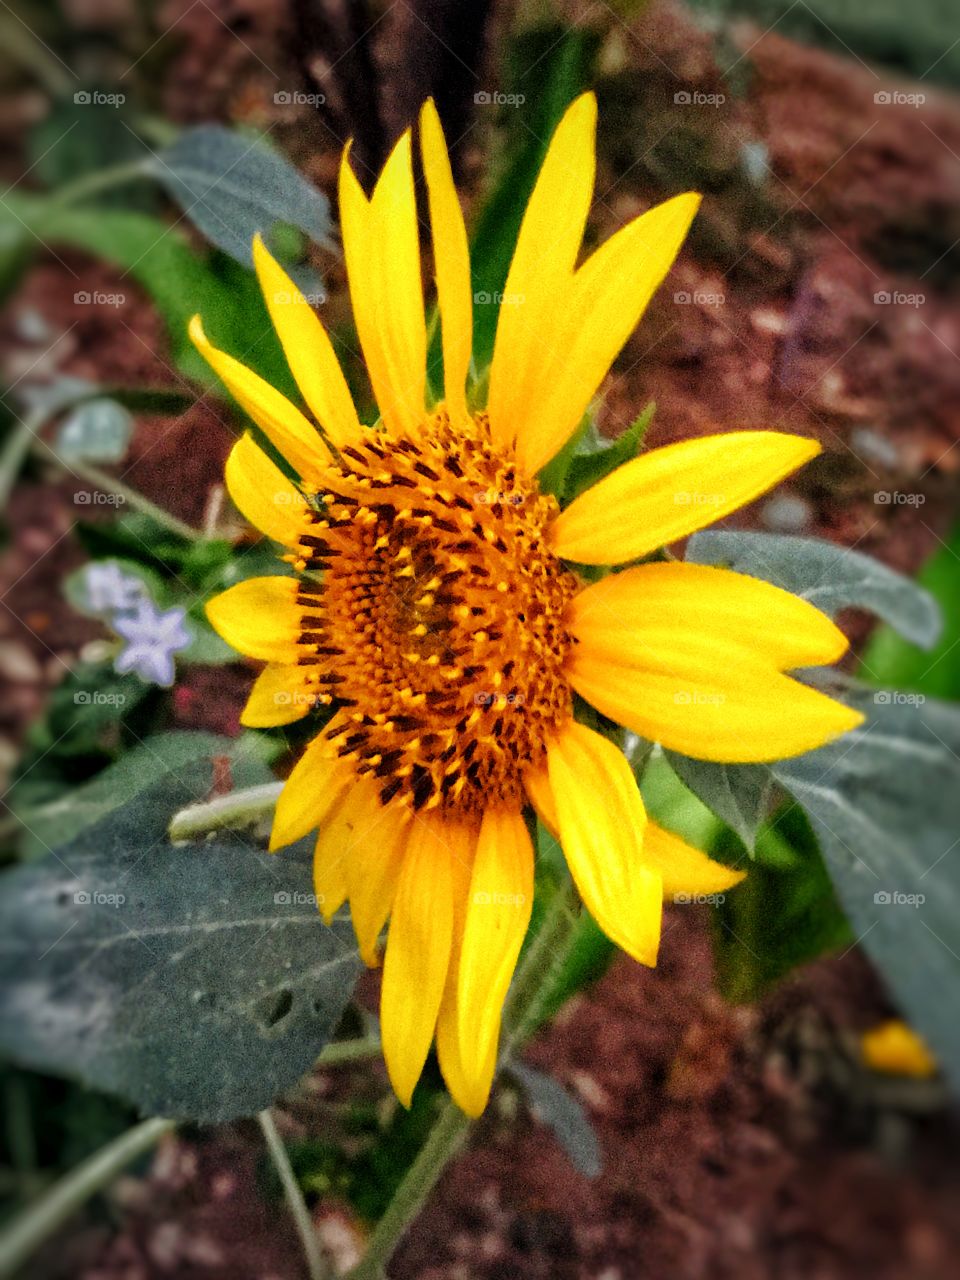 Sunflower is my second fav flower 